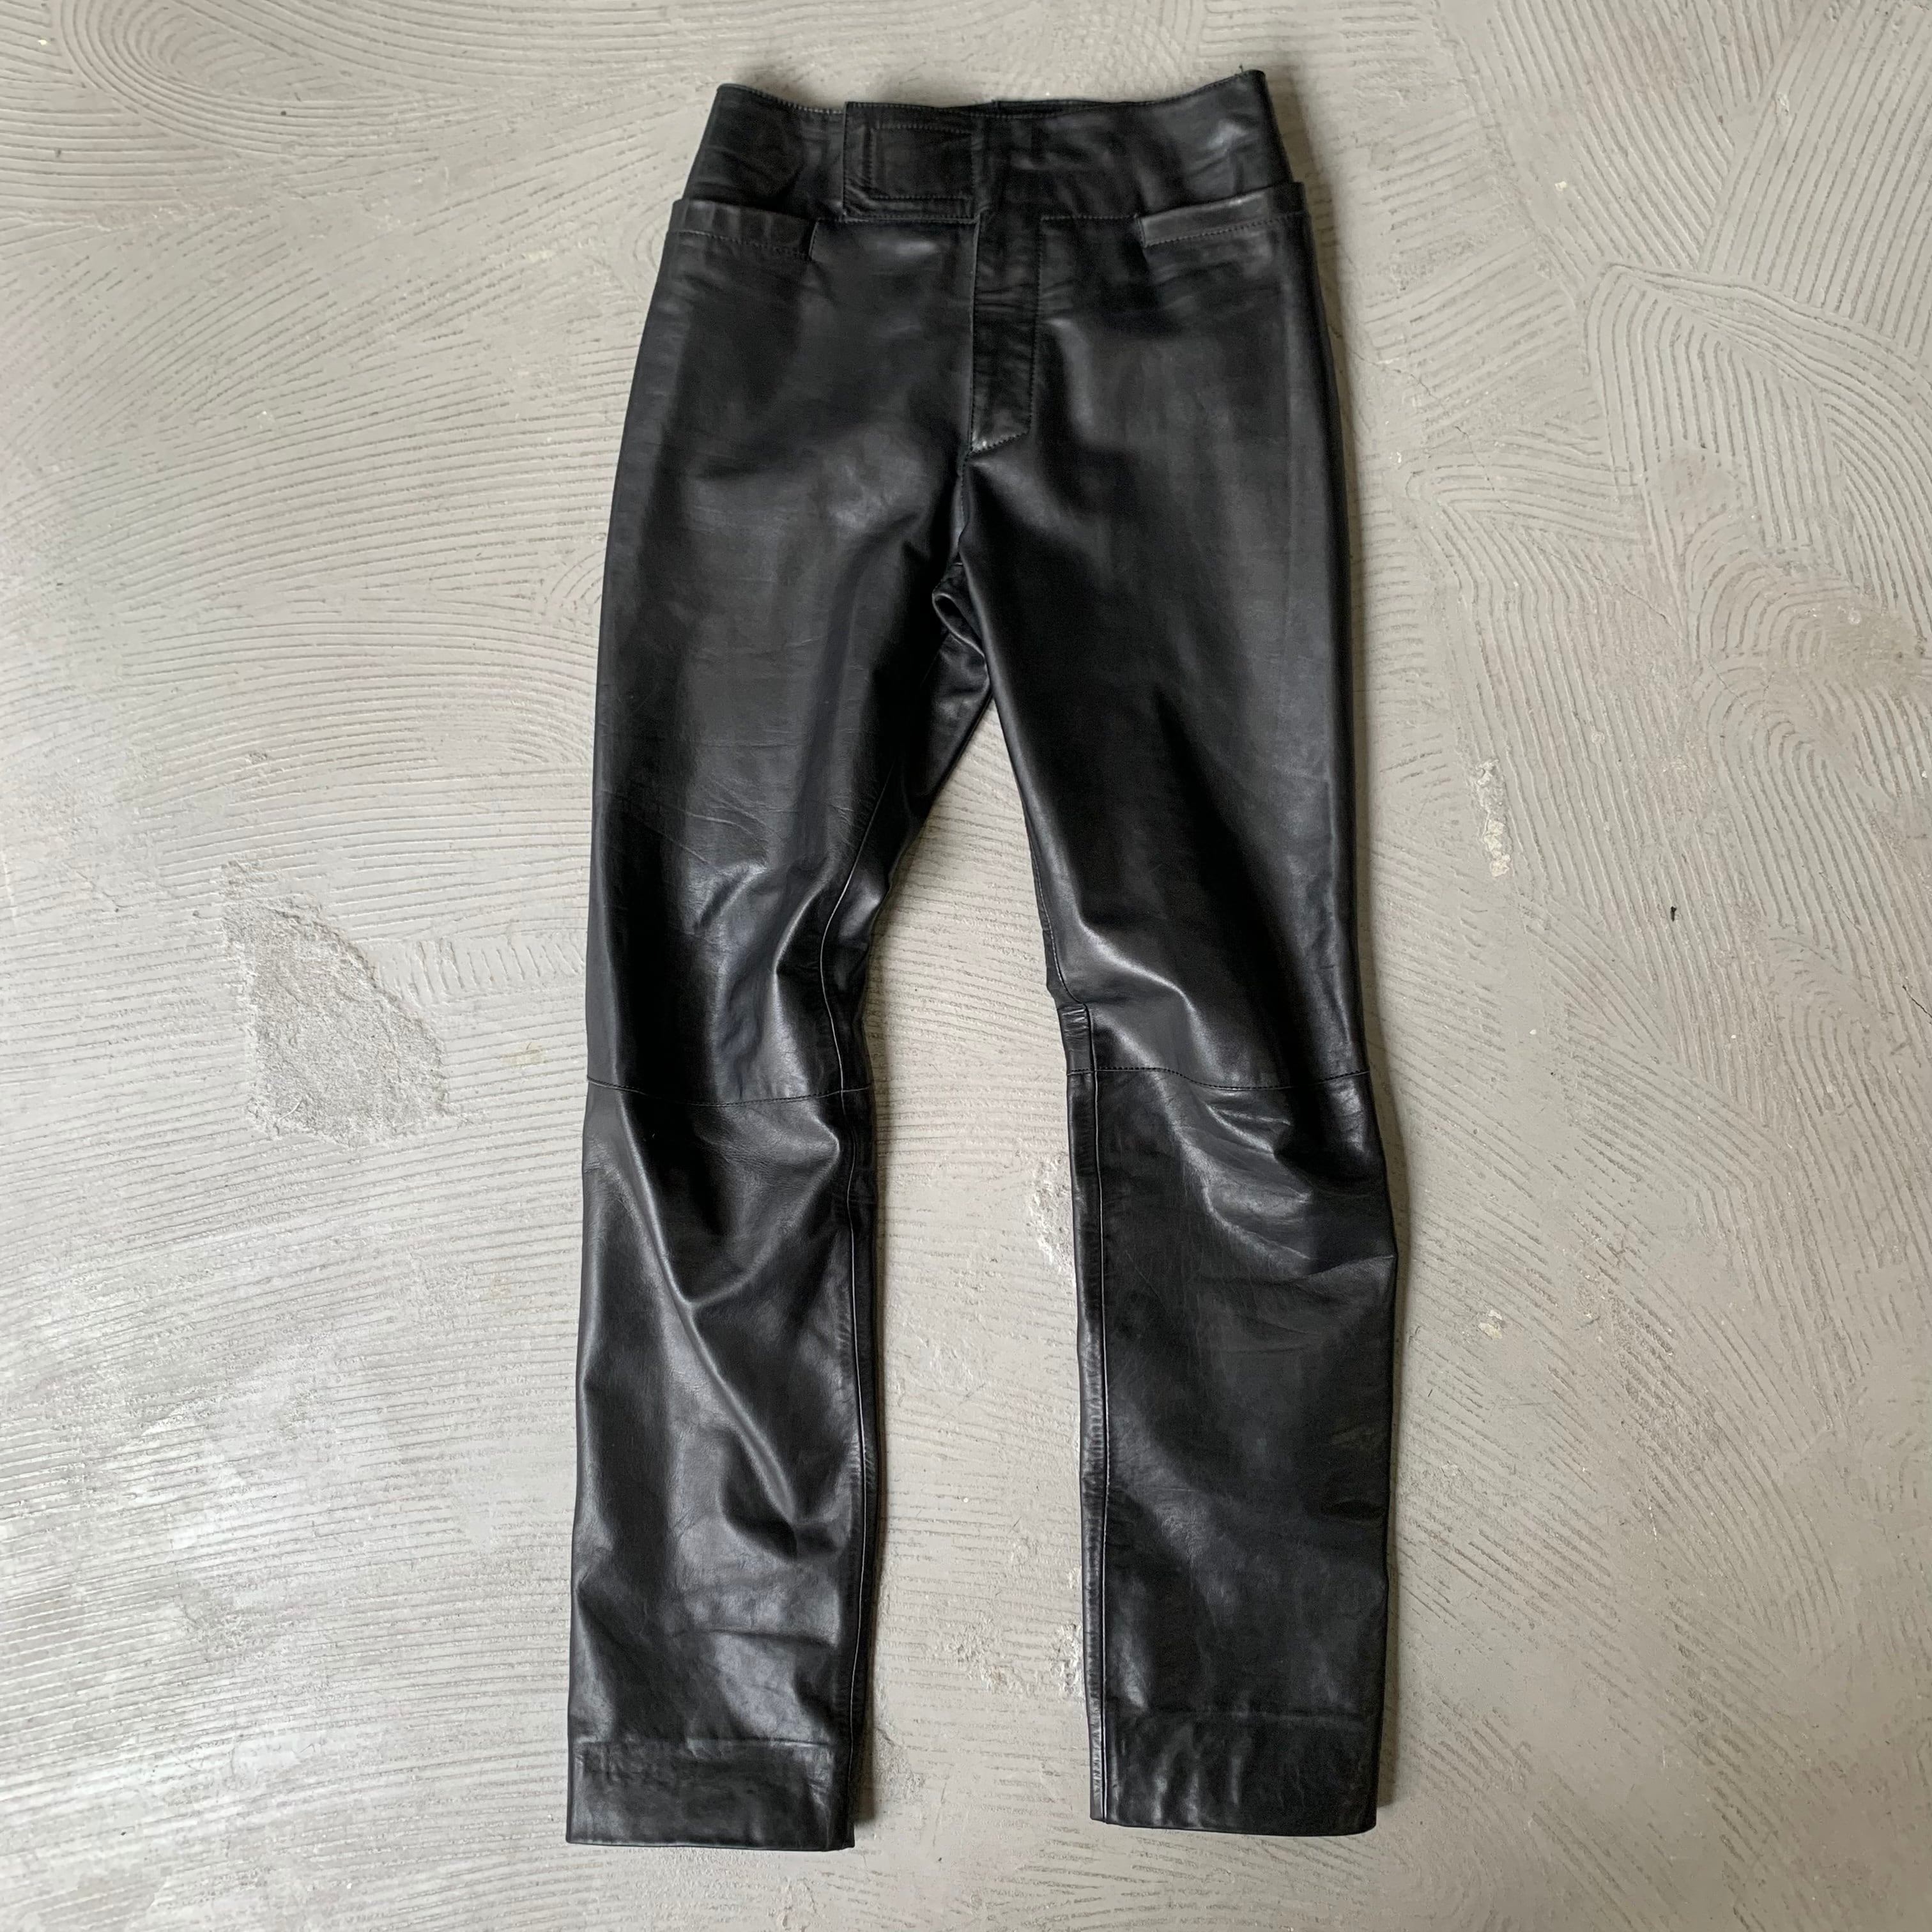 DIRK BIKKEMBERGS / Leather pants (B64) | SAMUEL FINCH / Online store